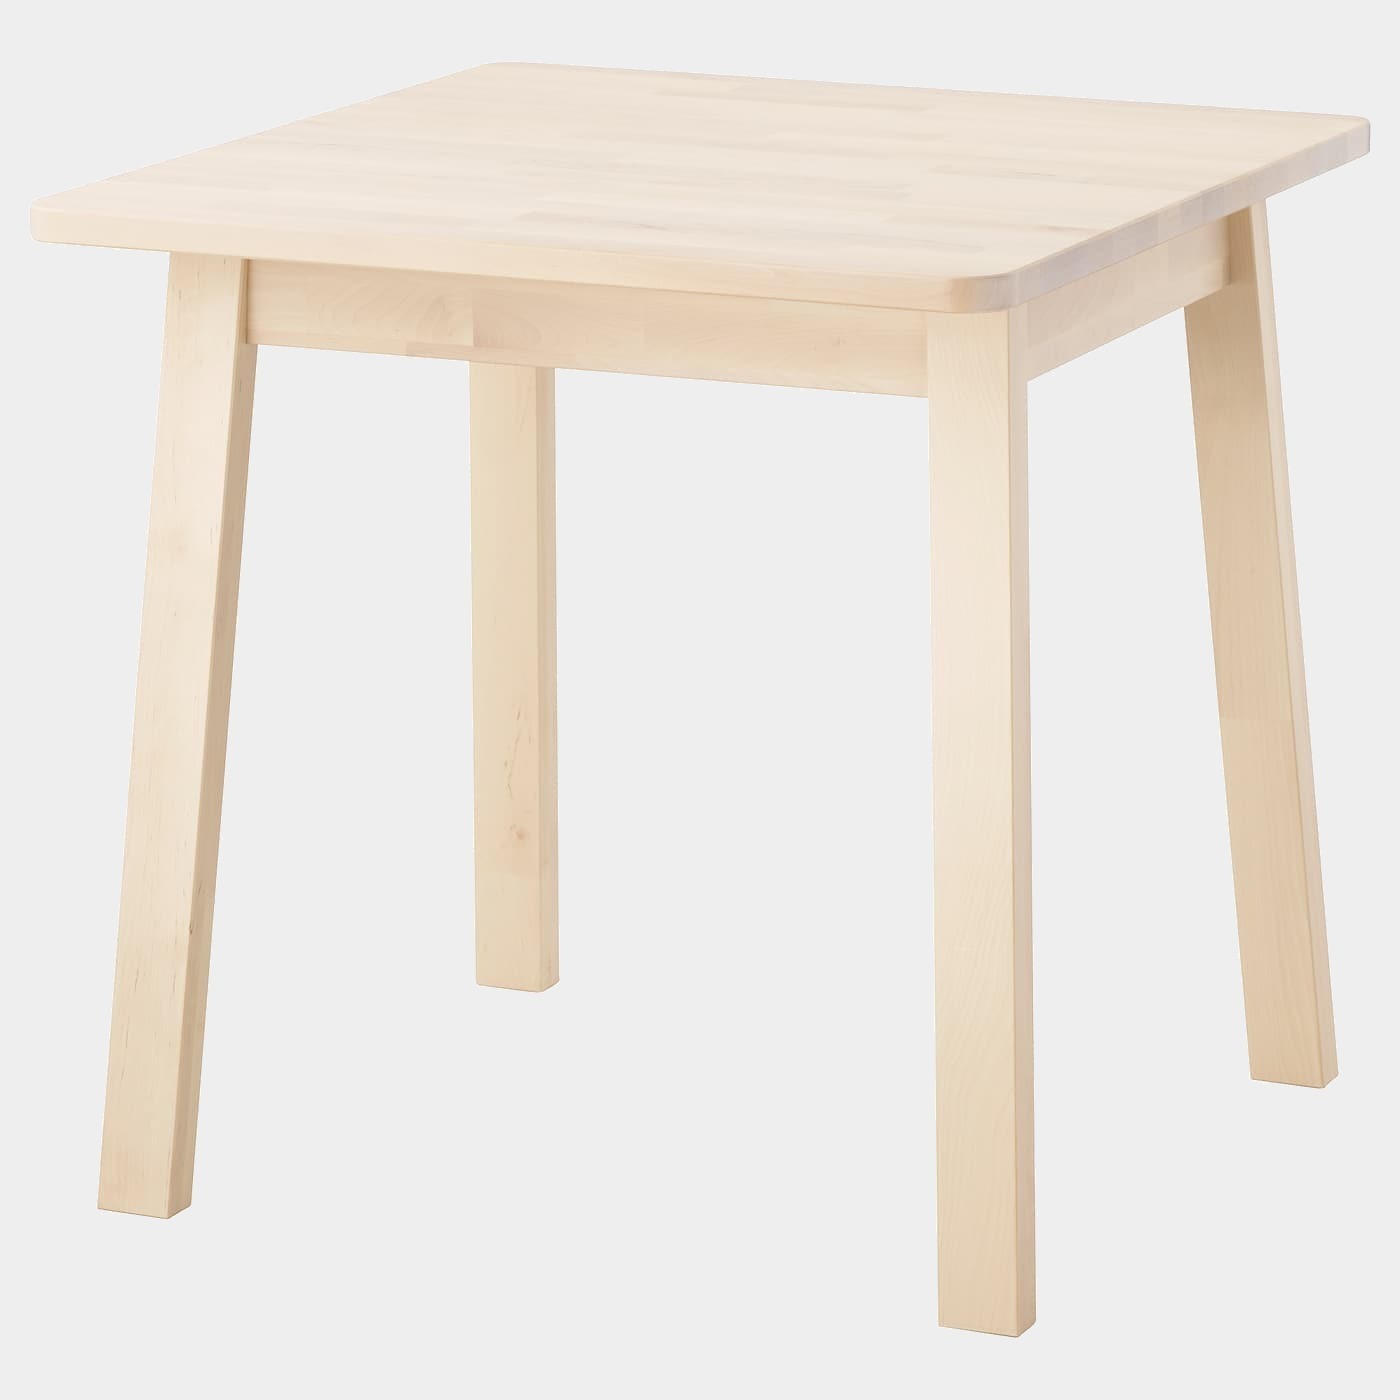 NORRÅKER Tisch  - Esstische - Möbel Ideen für dein Zuhause von Home Trends. Möbel Trends von Social Media Influencer für dein Skandi Zuhause.